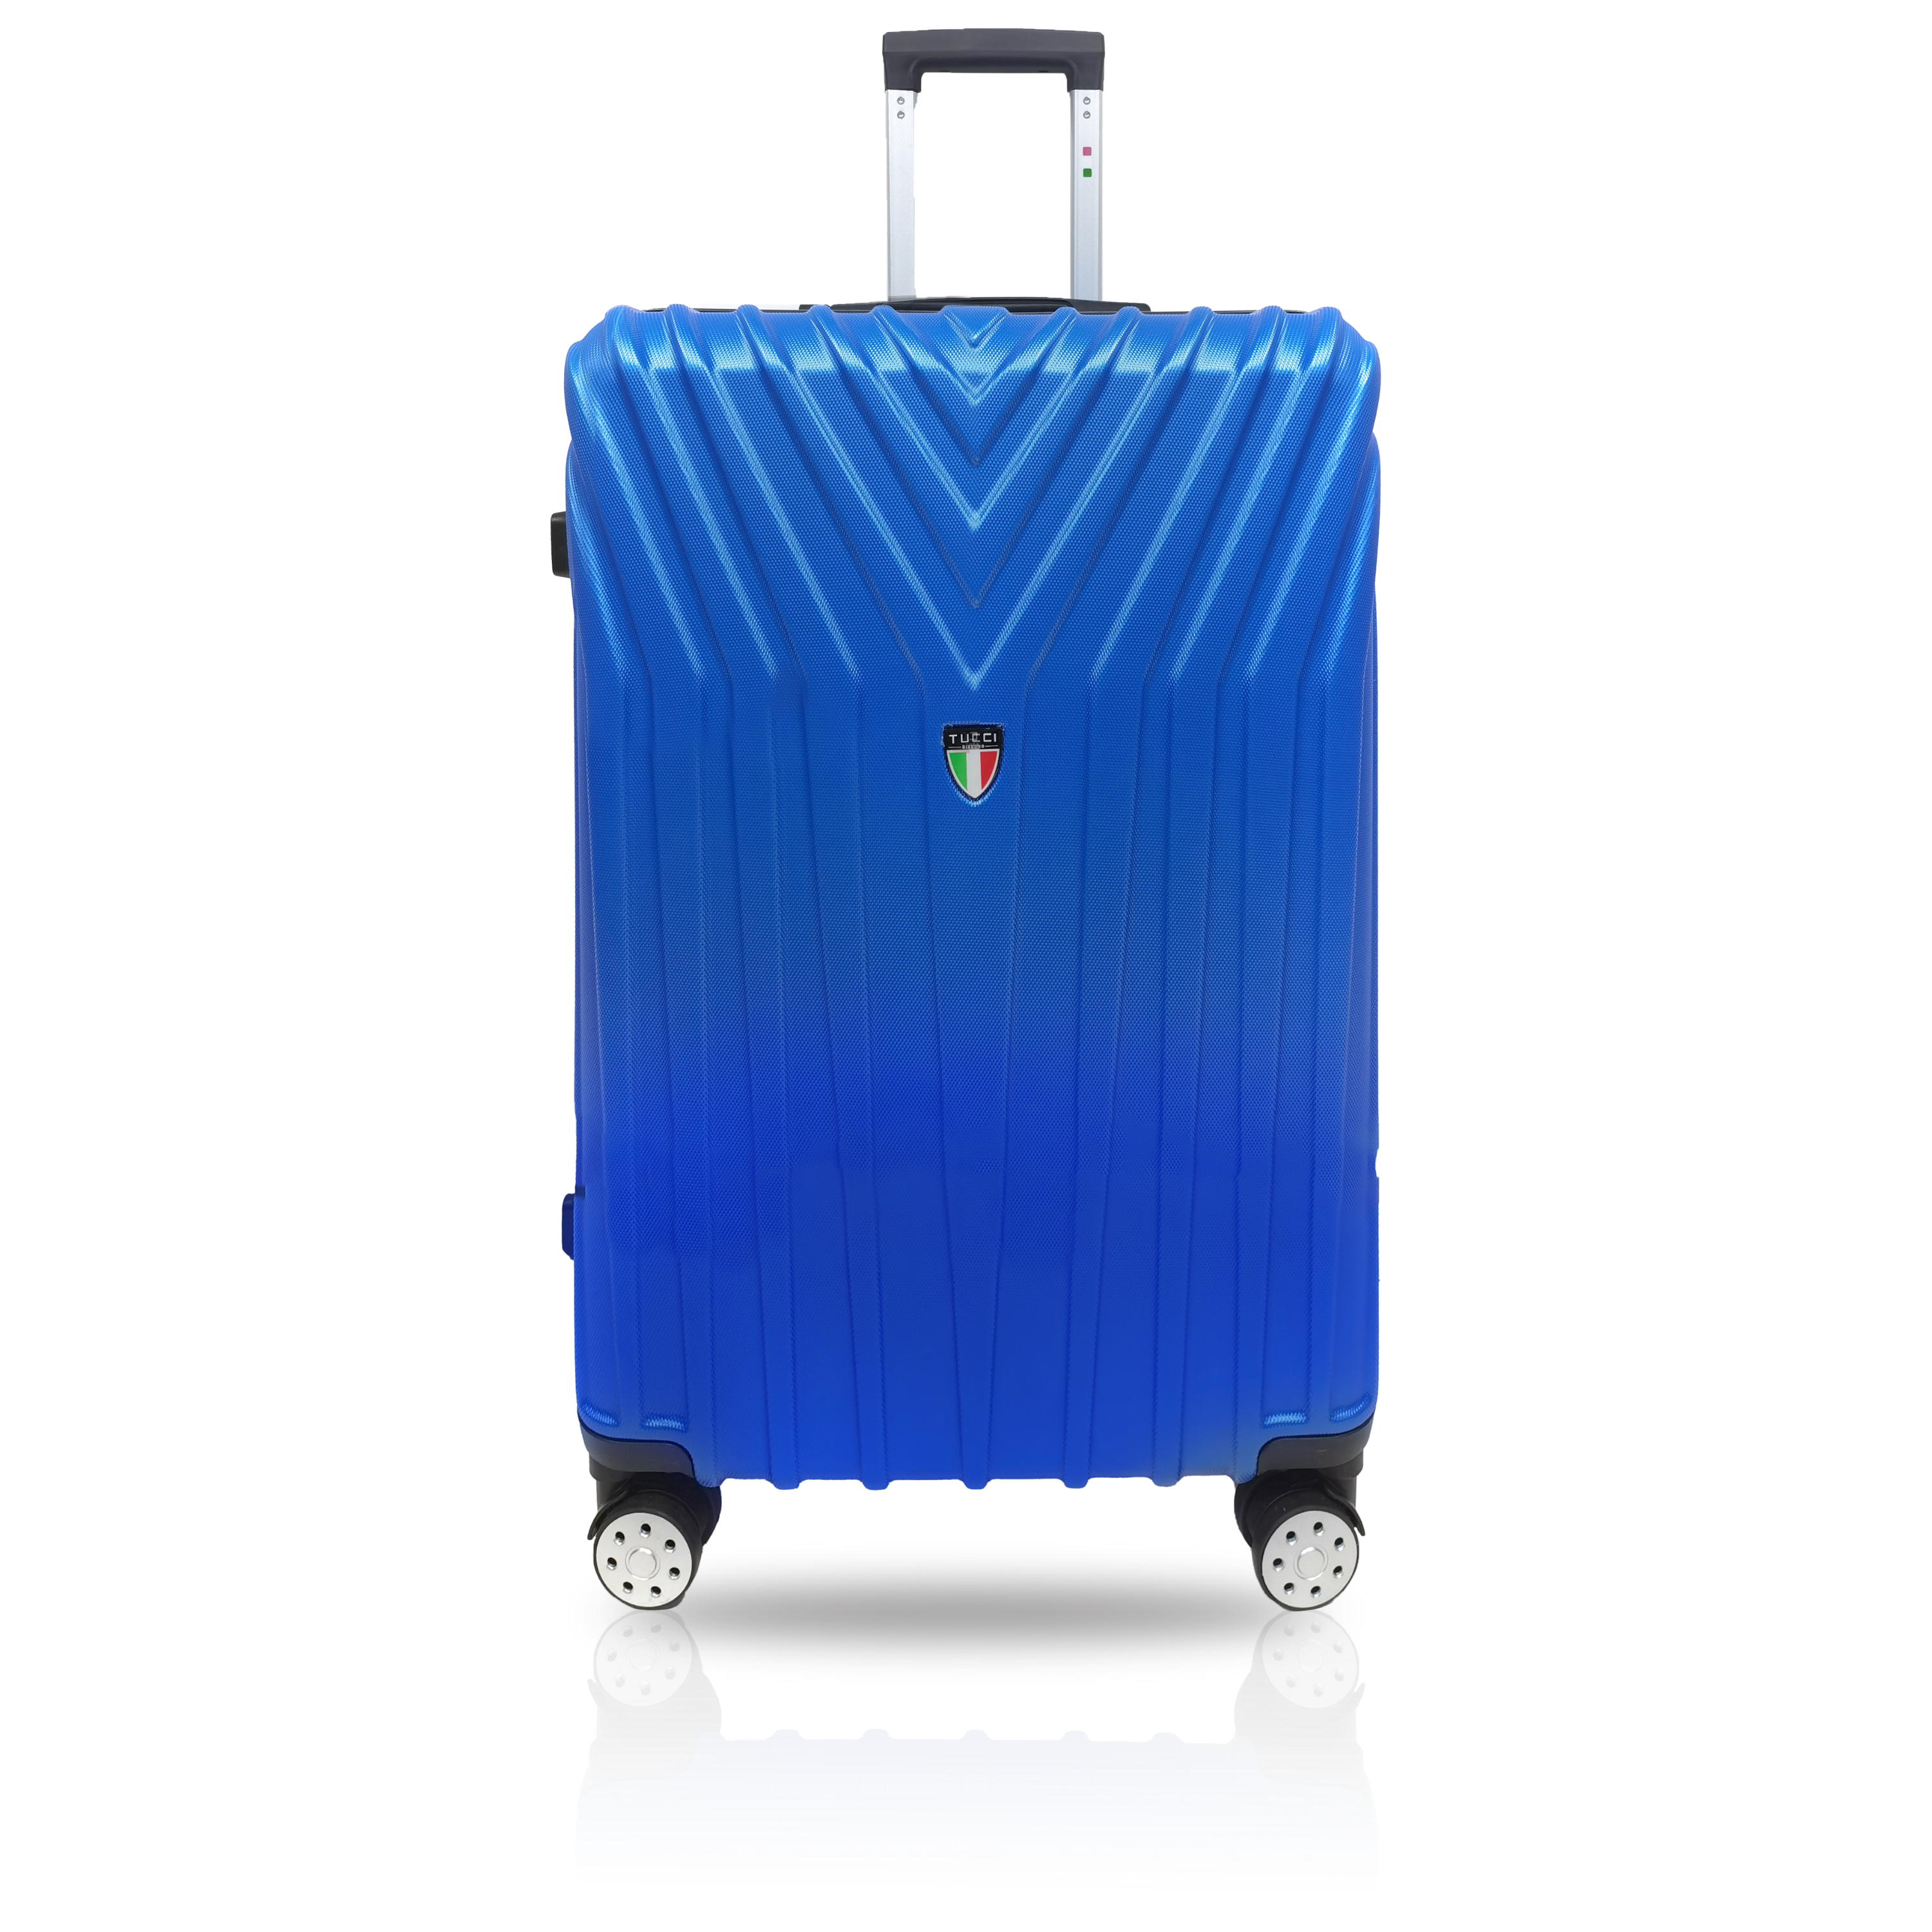 TUCCI BORDO ABS 3 PC (20", 24", 28") Travel Luggage Set